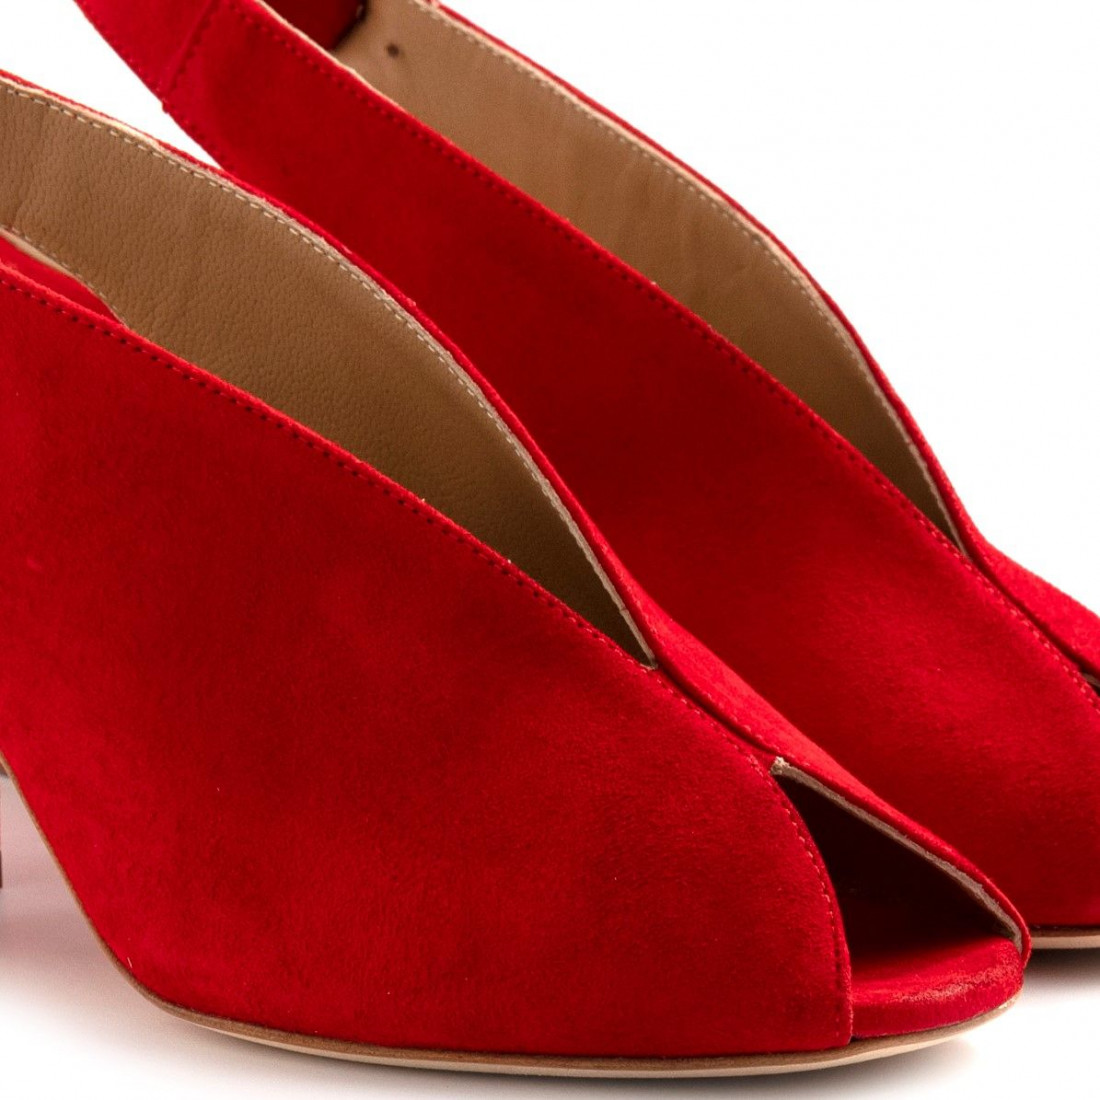 Sandalia de ante rojo extreme con tacón medio